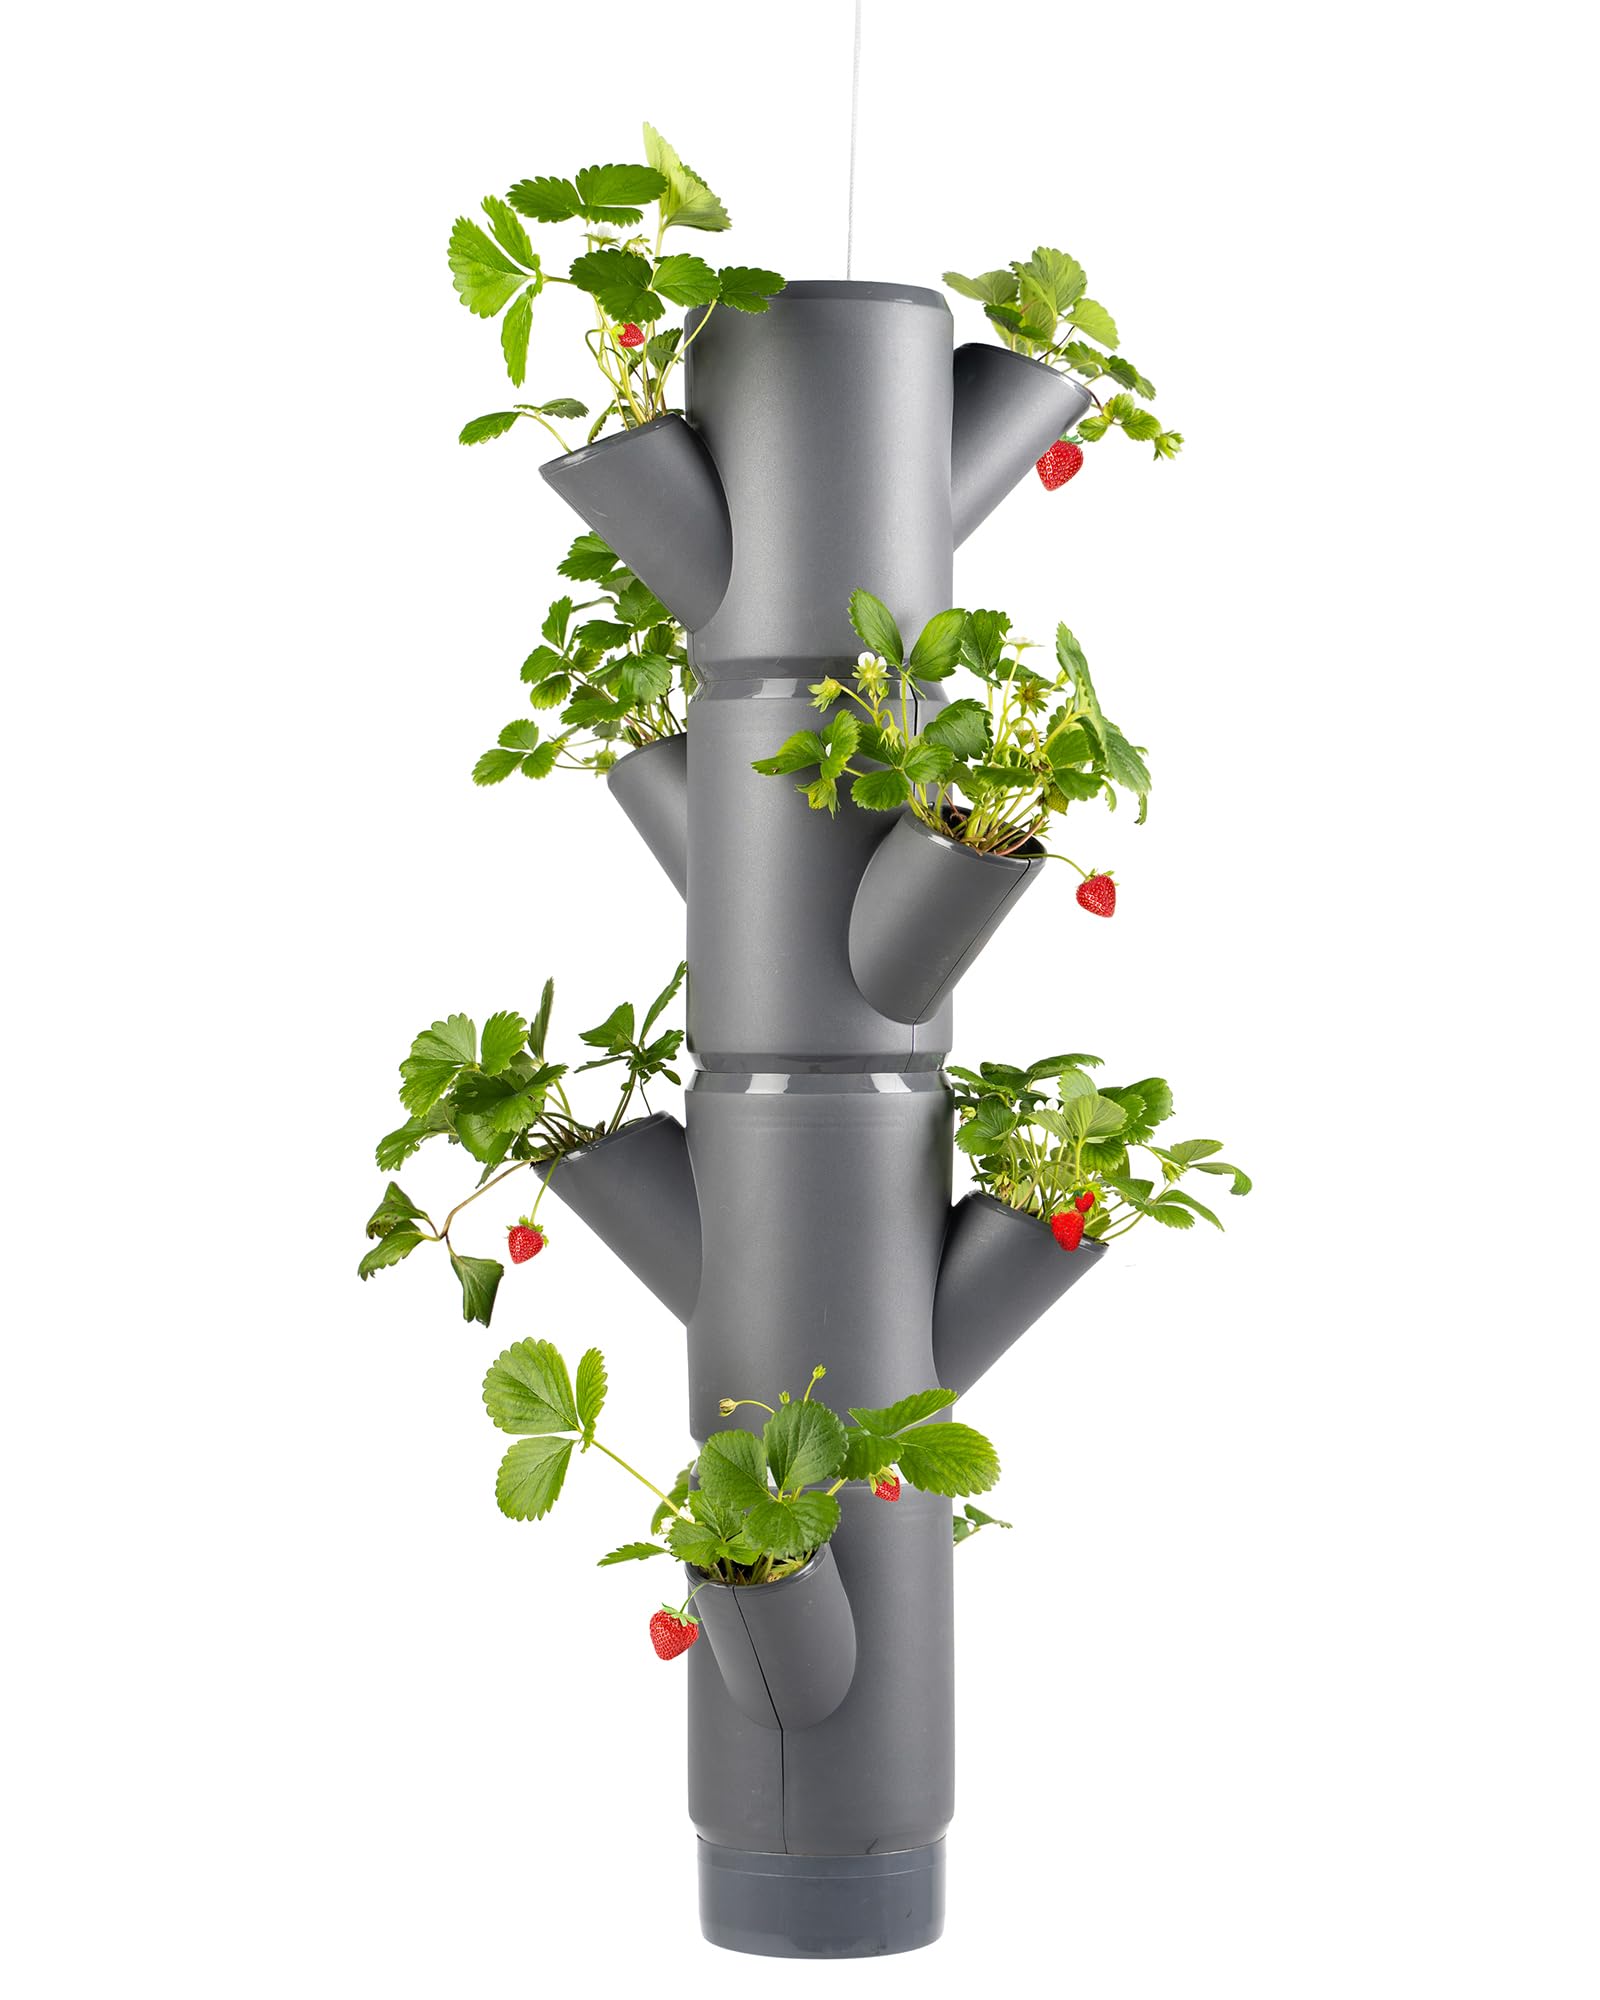 GUSTA GARDEN Sissi Strawberry Erdbeerbaum Hanging Anthrazit - Hängeampel System für Erdbeeren - für Garten & Balkon - 77 cm Höhe - 10L Erdvolumen